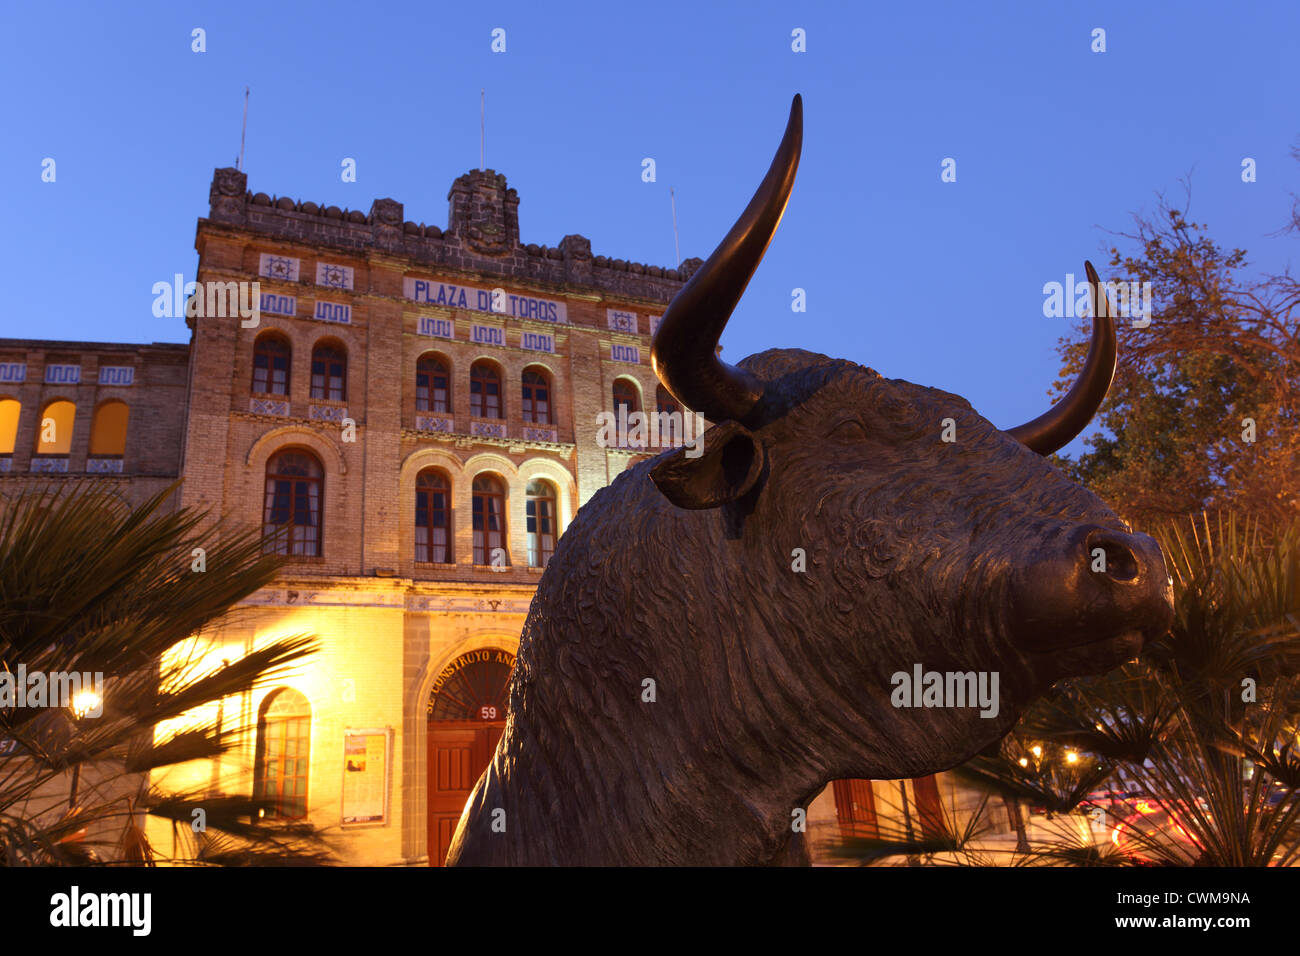 Stier-Statue vor der Plaza de Toros. El Puerto de Santa Maria, Andalusien Spanien Stockfoto